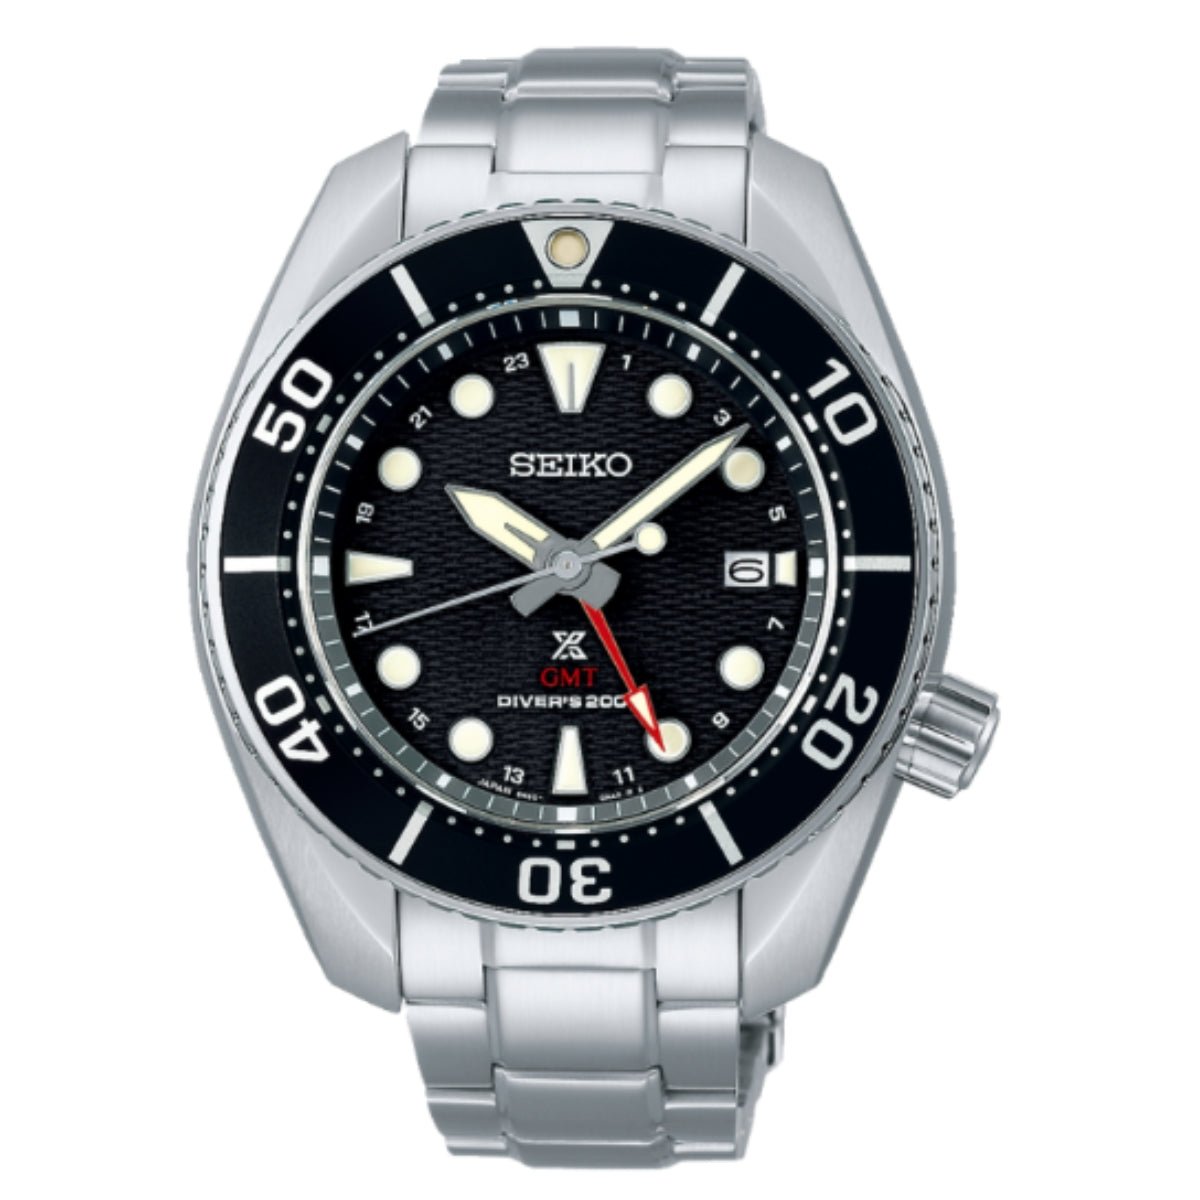 Seiko JDM Prospex GMT Sumo Solar Divers Black Dial Watch SBPK003 -Seiko